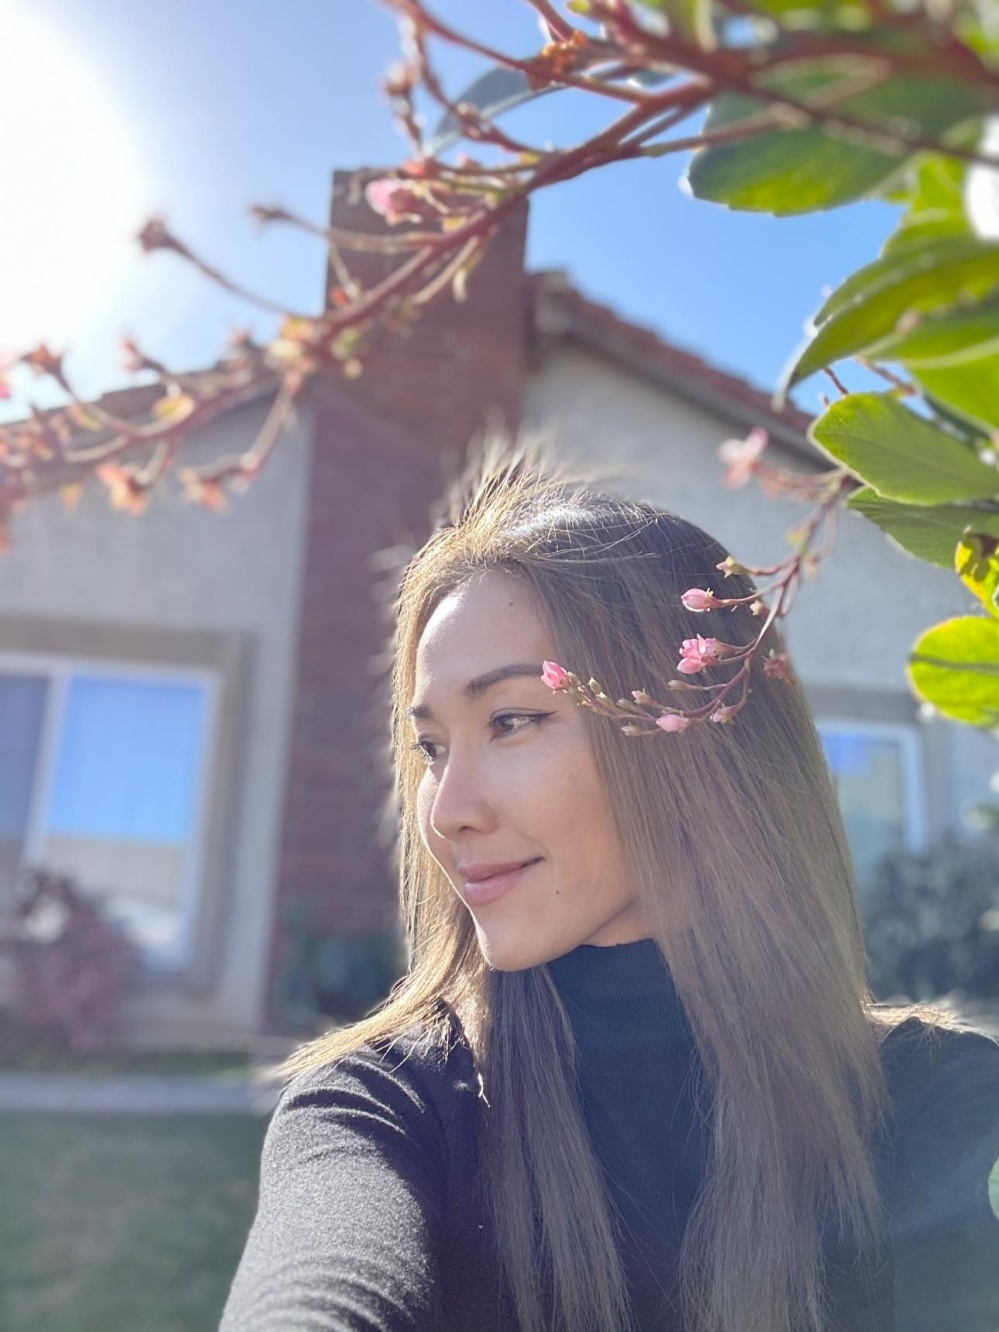 Diễn viên Kim Hiền sống trong biệt thự đầy hoa lá, xanh mướt bốn mùa - Ảnh 5